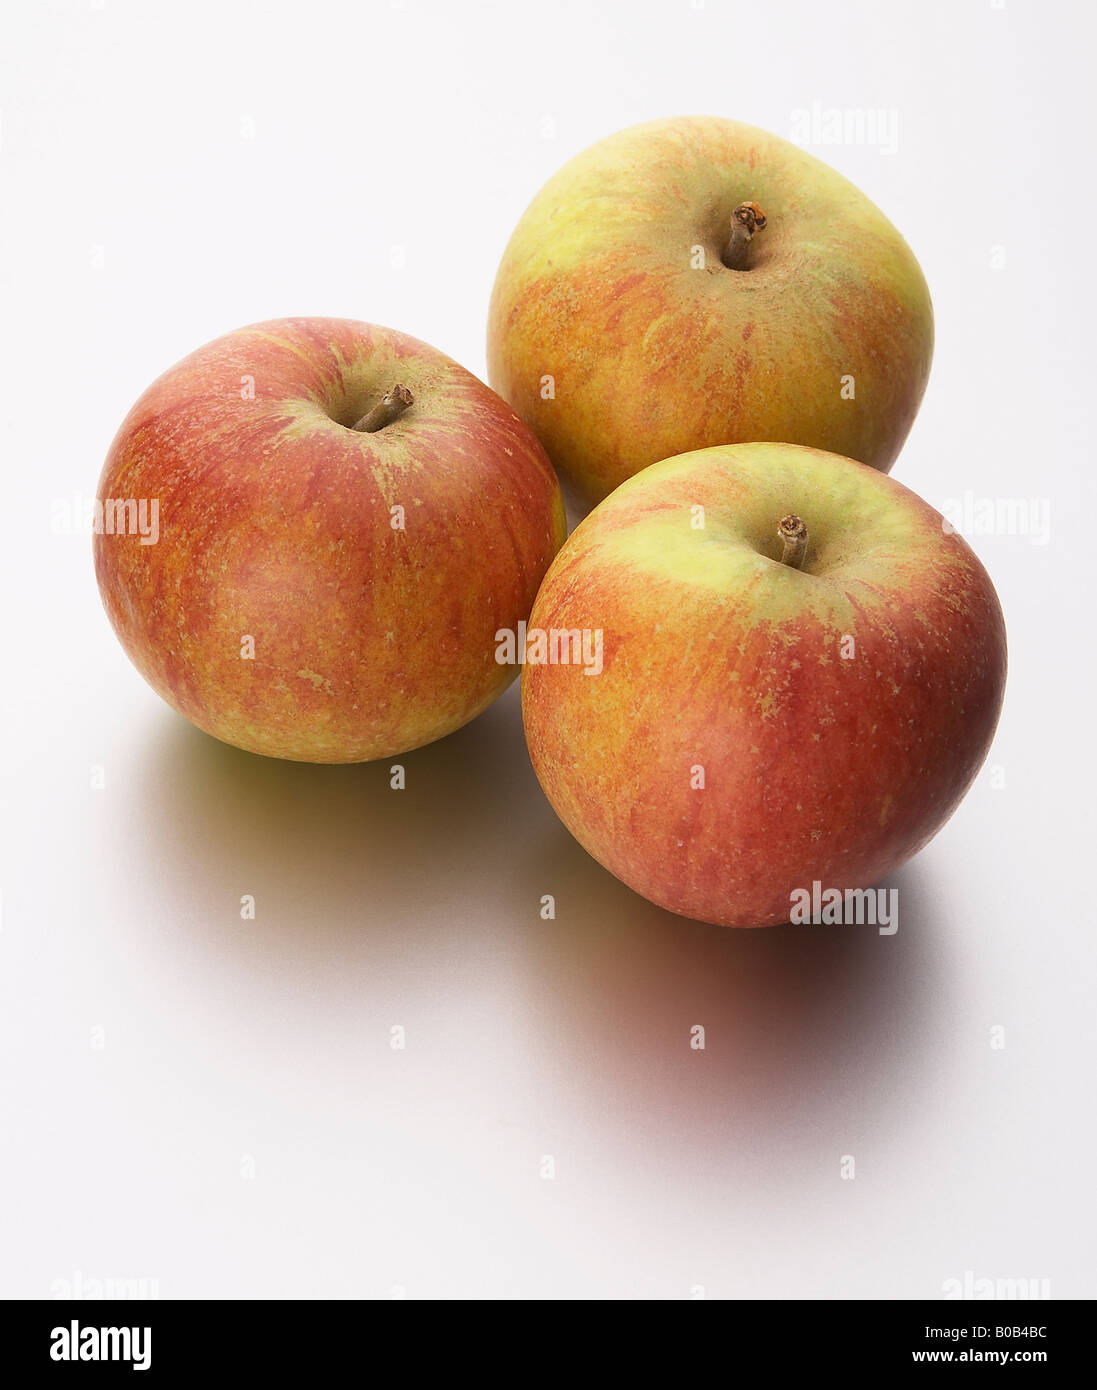 three cox apples Stock Photo